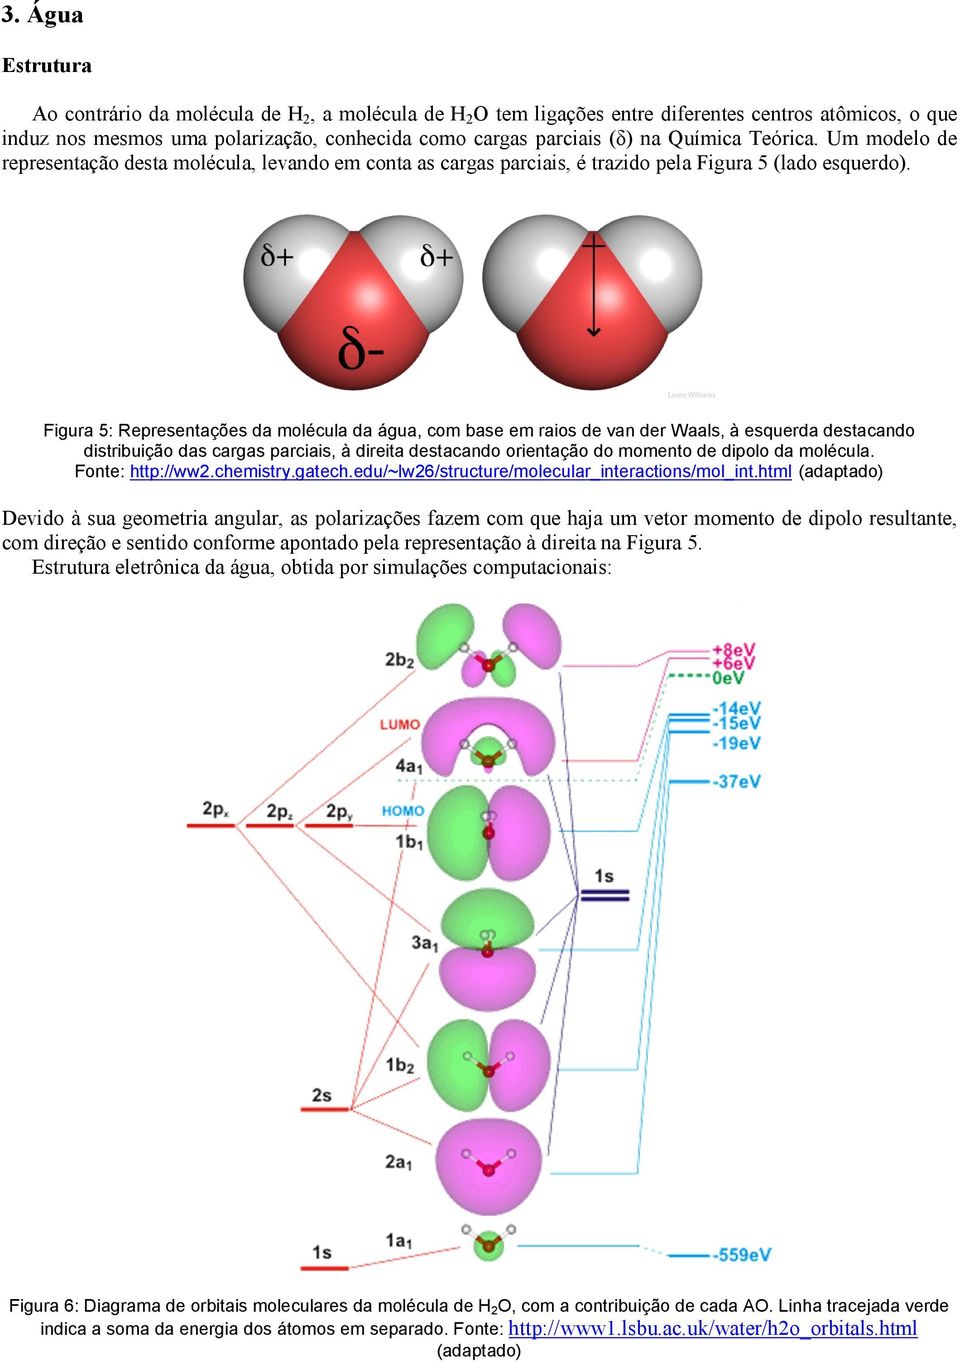 Figura 5: Representações da molécula da água, com base em raios de van der Waals, à esquerda destacando distribuição das cargas parciais, à direita destacando orientação do momento de dipolo da